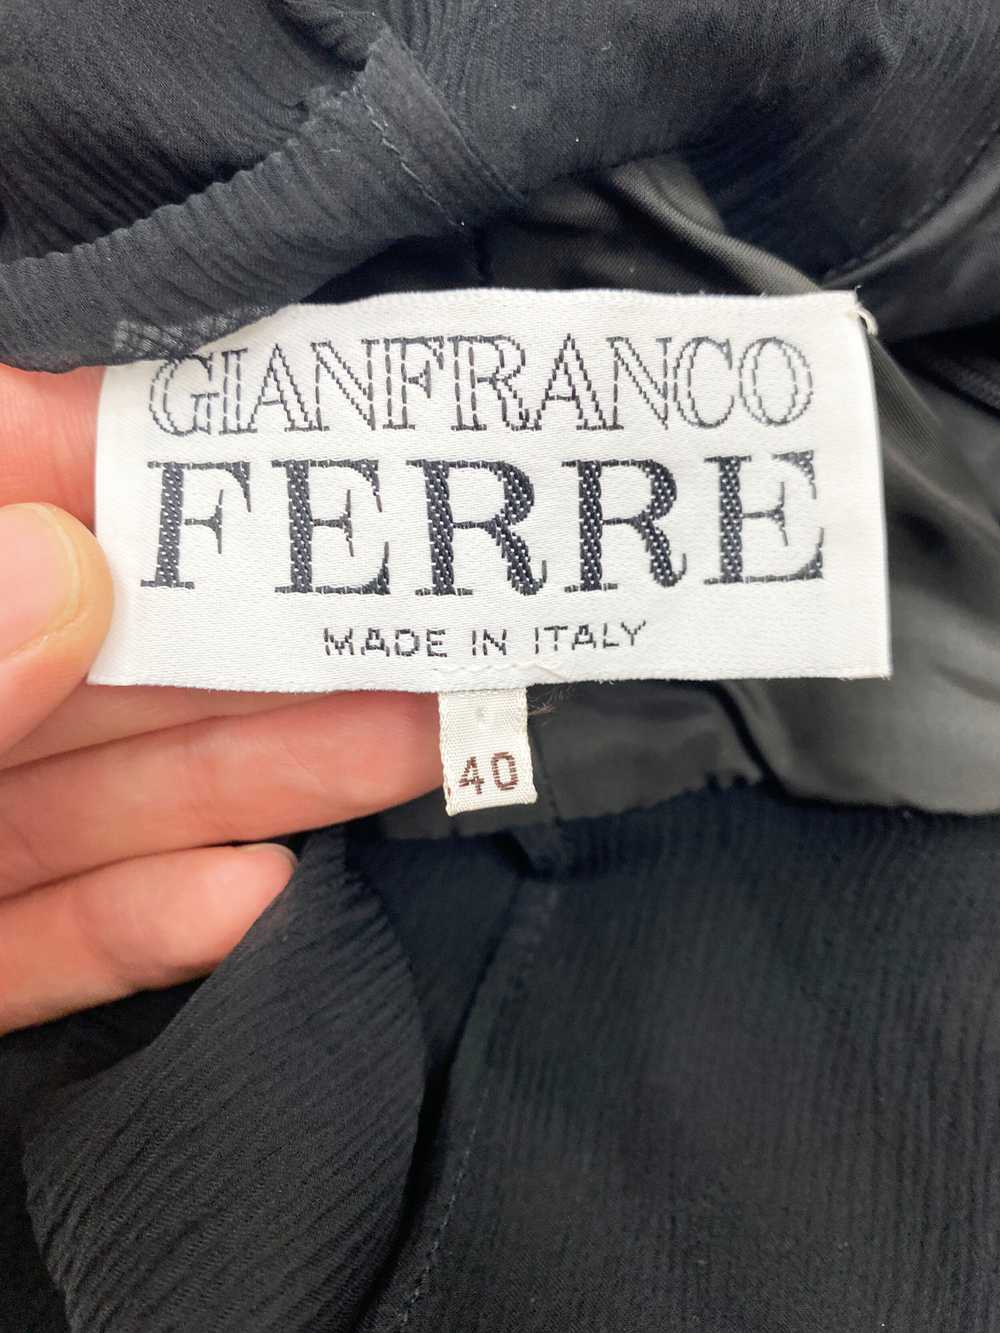 Gianfranco Ferre 90s sheer chiffon dress - image 3